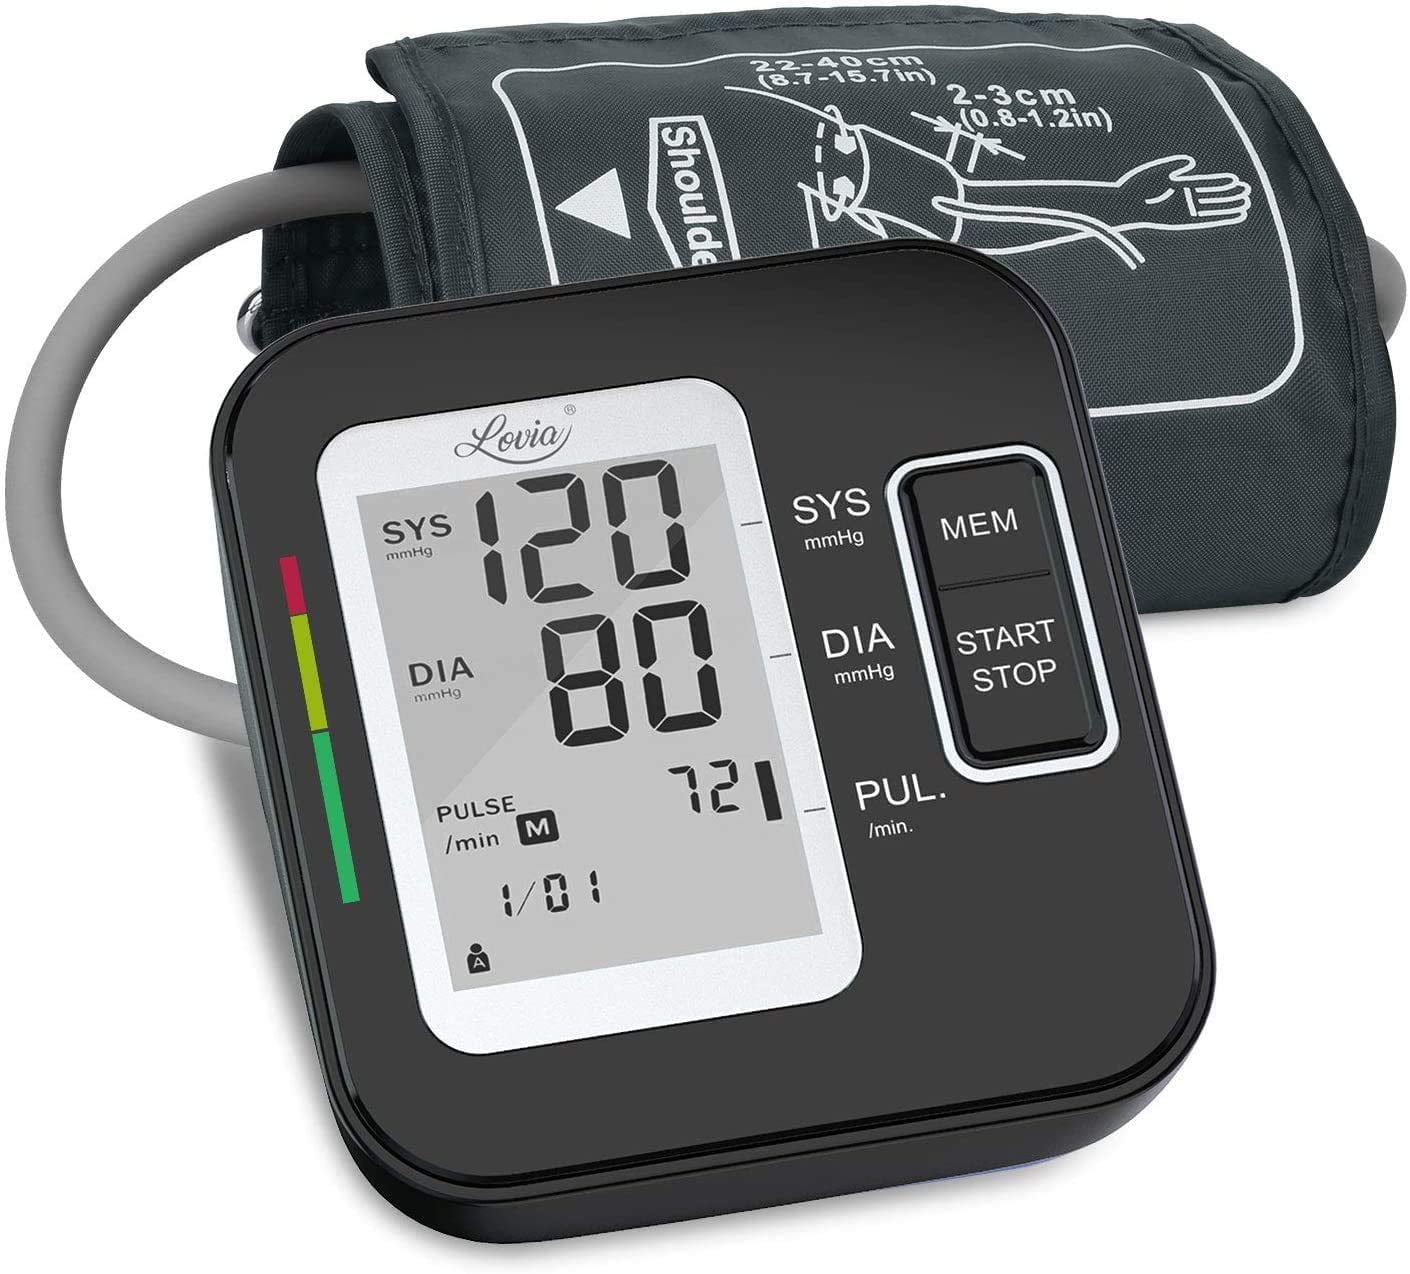 my home blood pressure monitor shows irregular heartbeat kezelése szájpenész anyák diabetes kezelésére